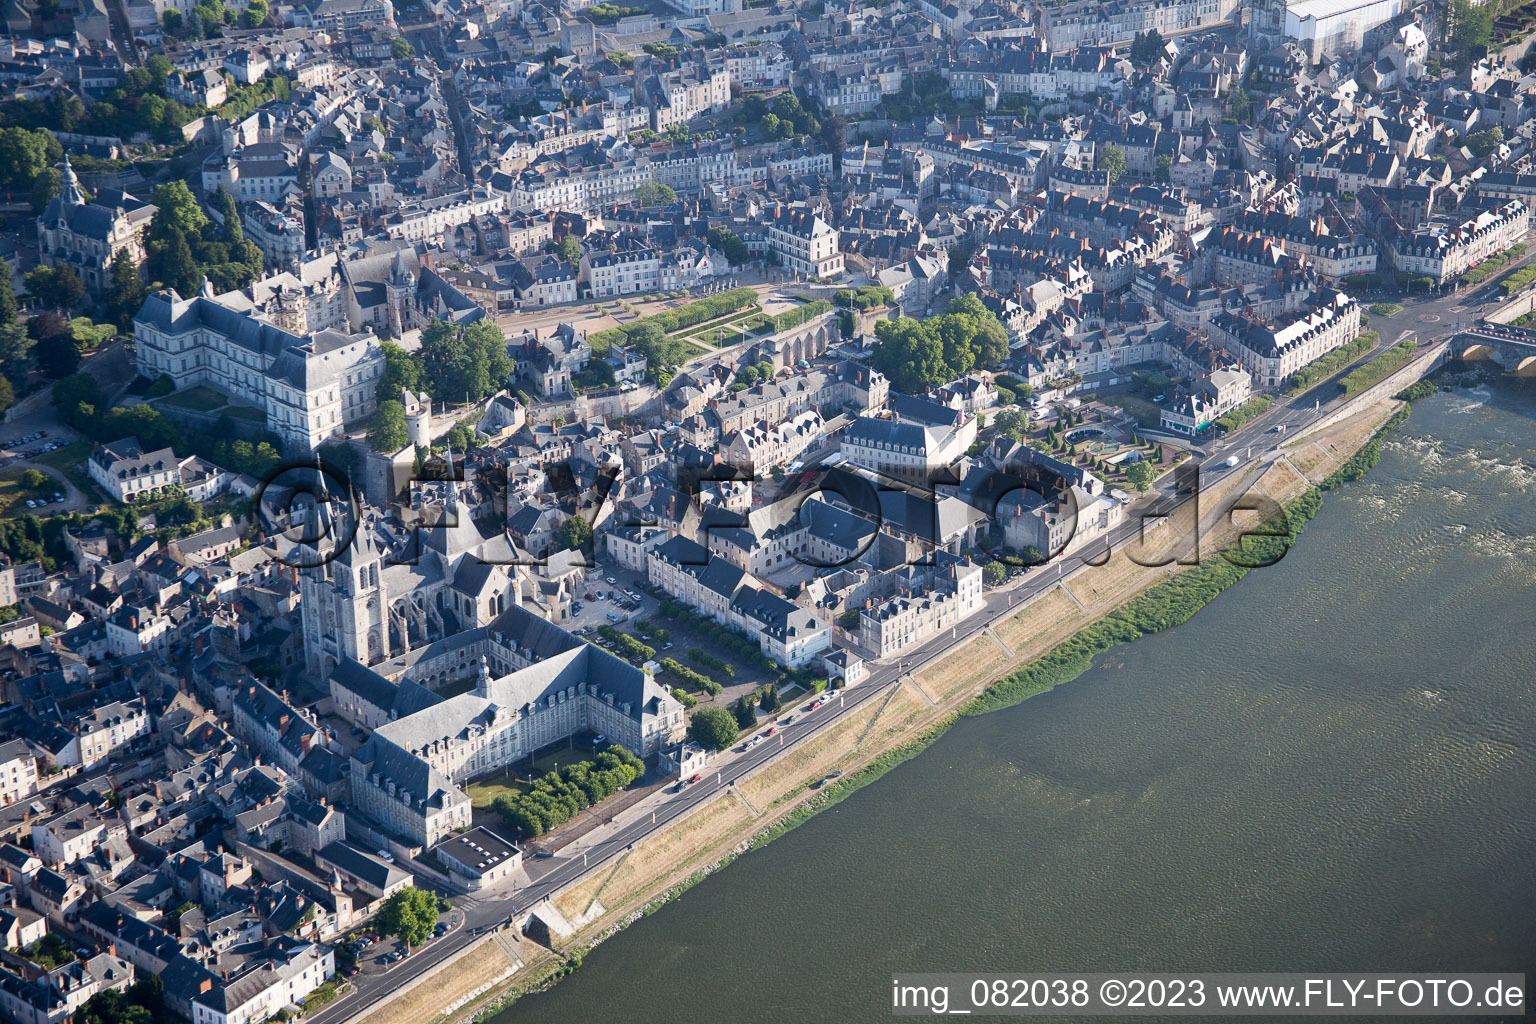 Blois im Bundesland Loir-et-Cher, Frankreich von oben gesehen